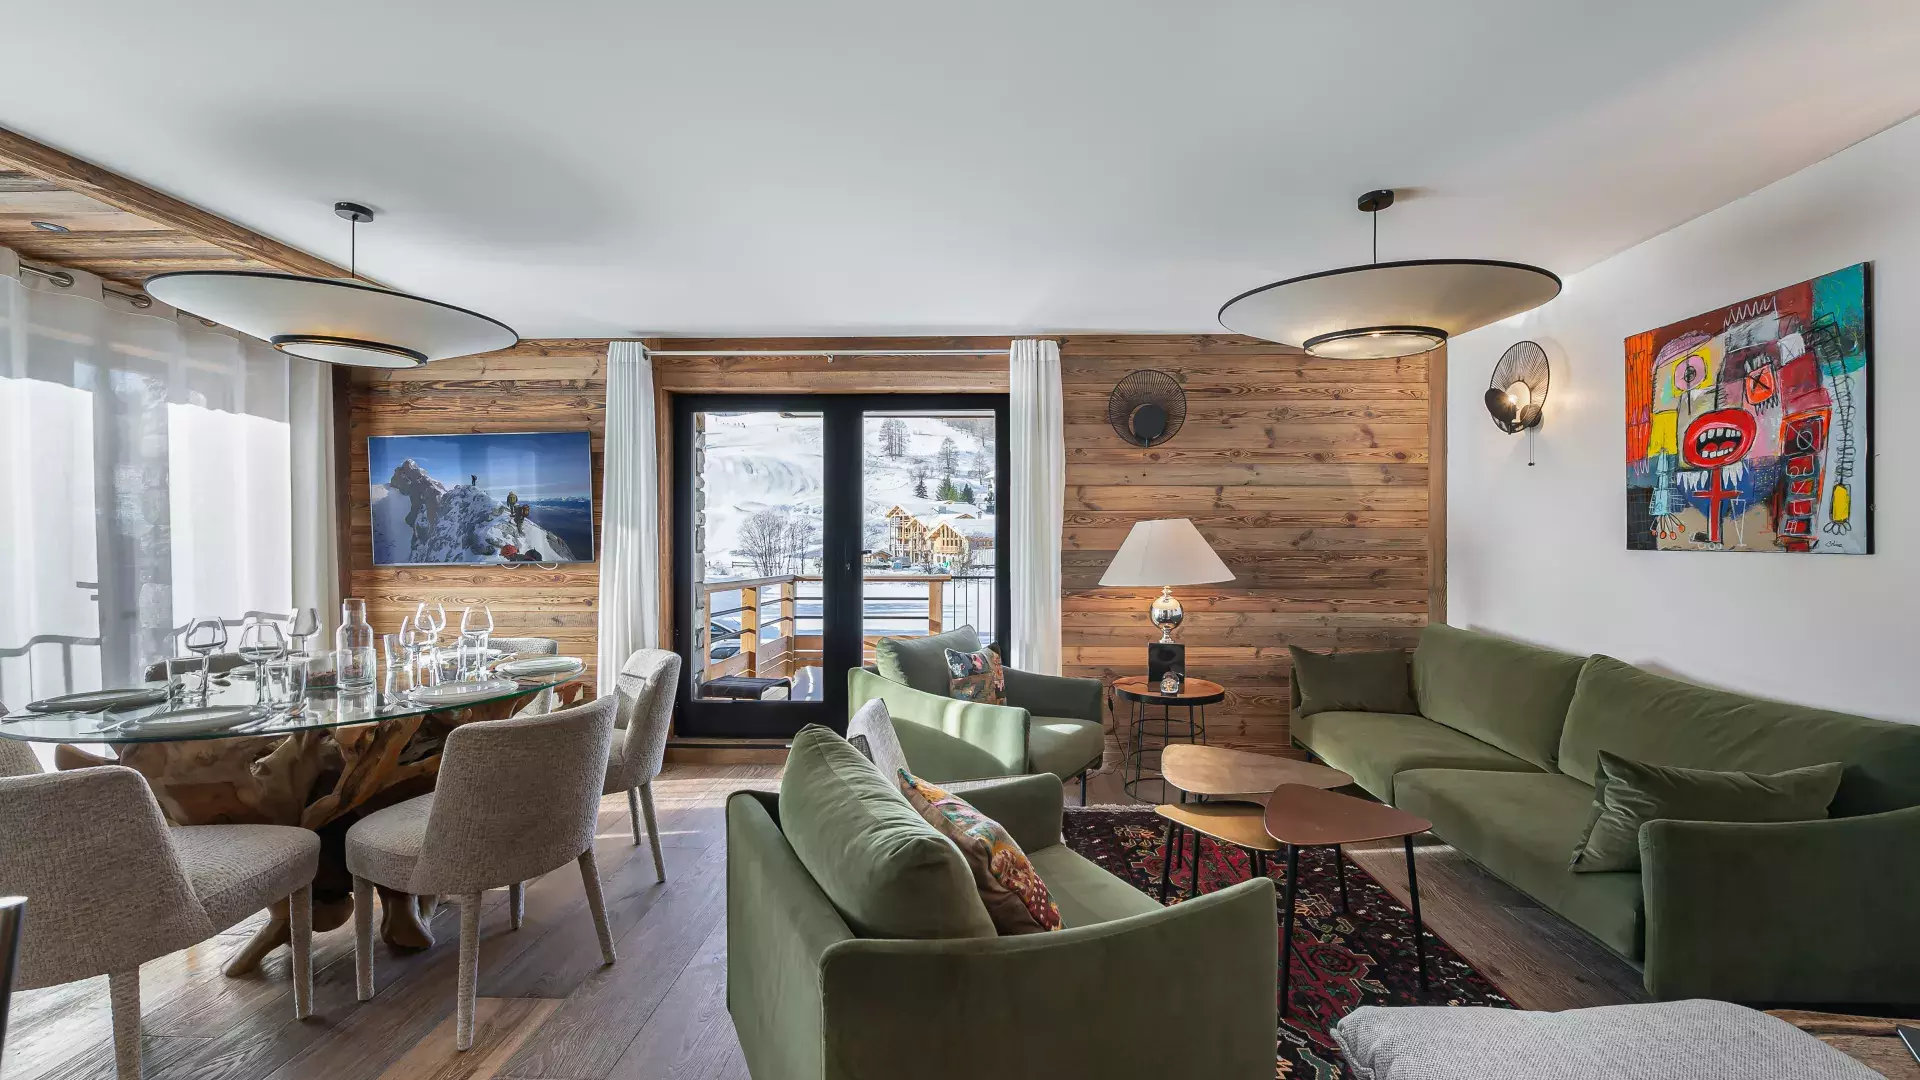 Appartement Sifflote 1 - Location chalets Covarel - Val d'Isère Alpes - France - Salon